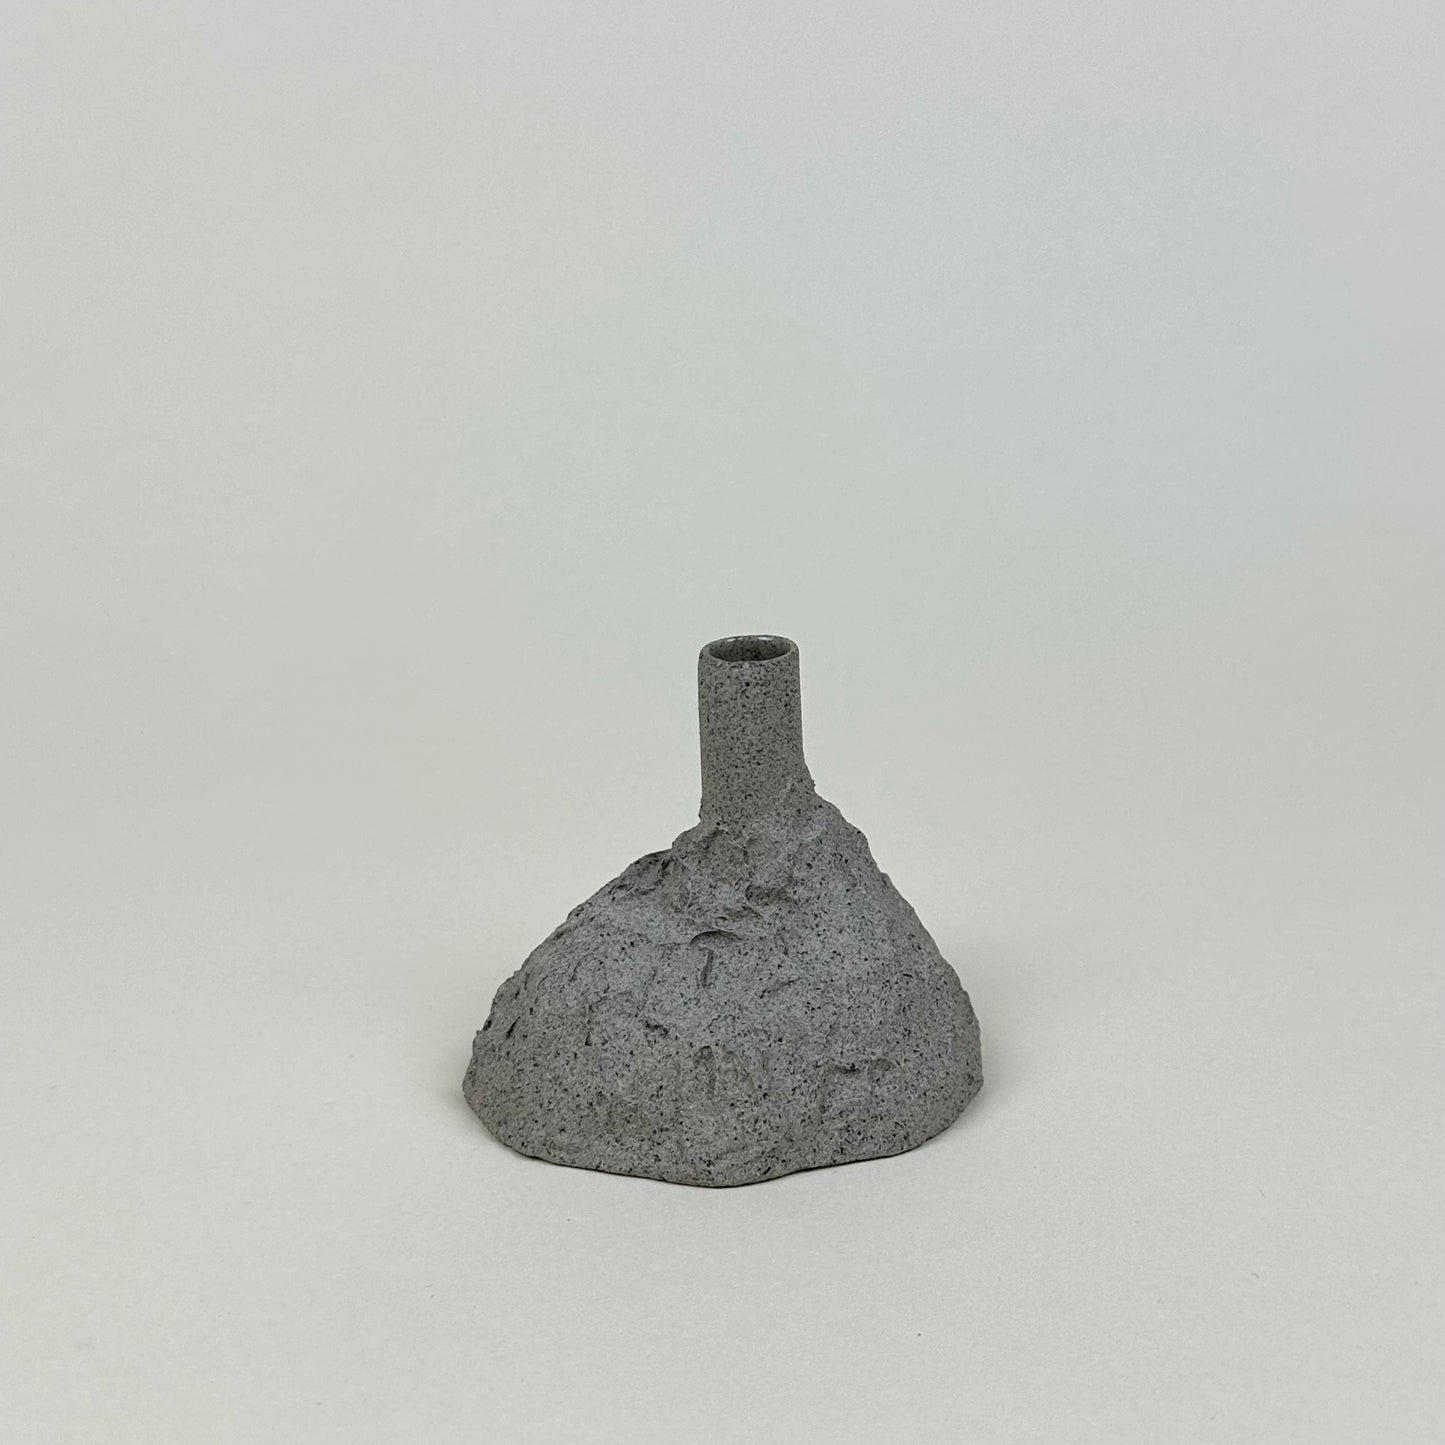 Small ceramic bud vase by Malwina Kleparska, grey